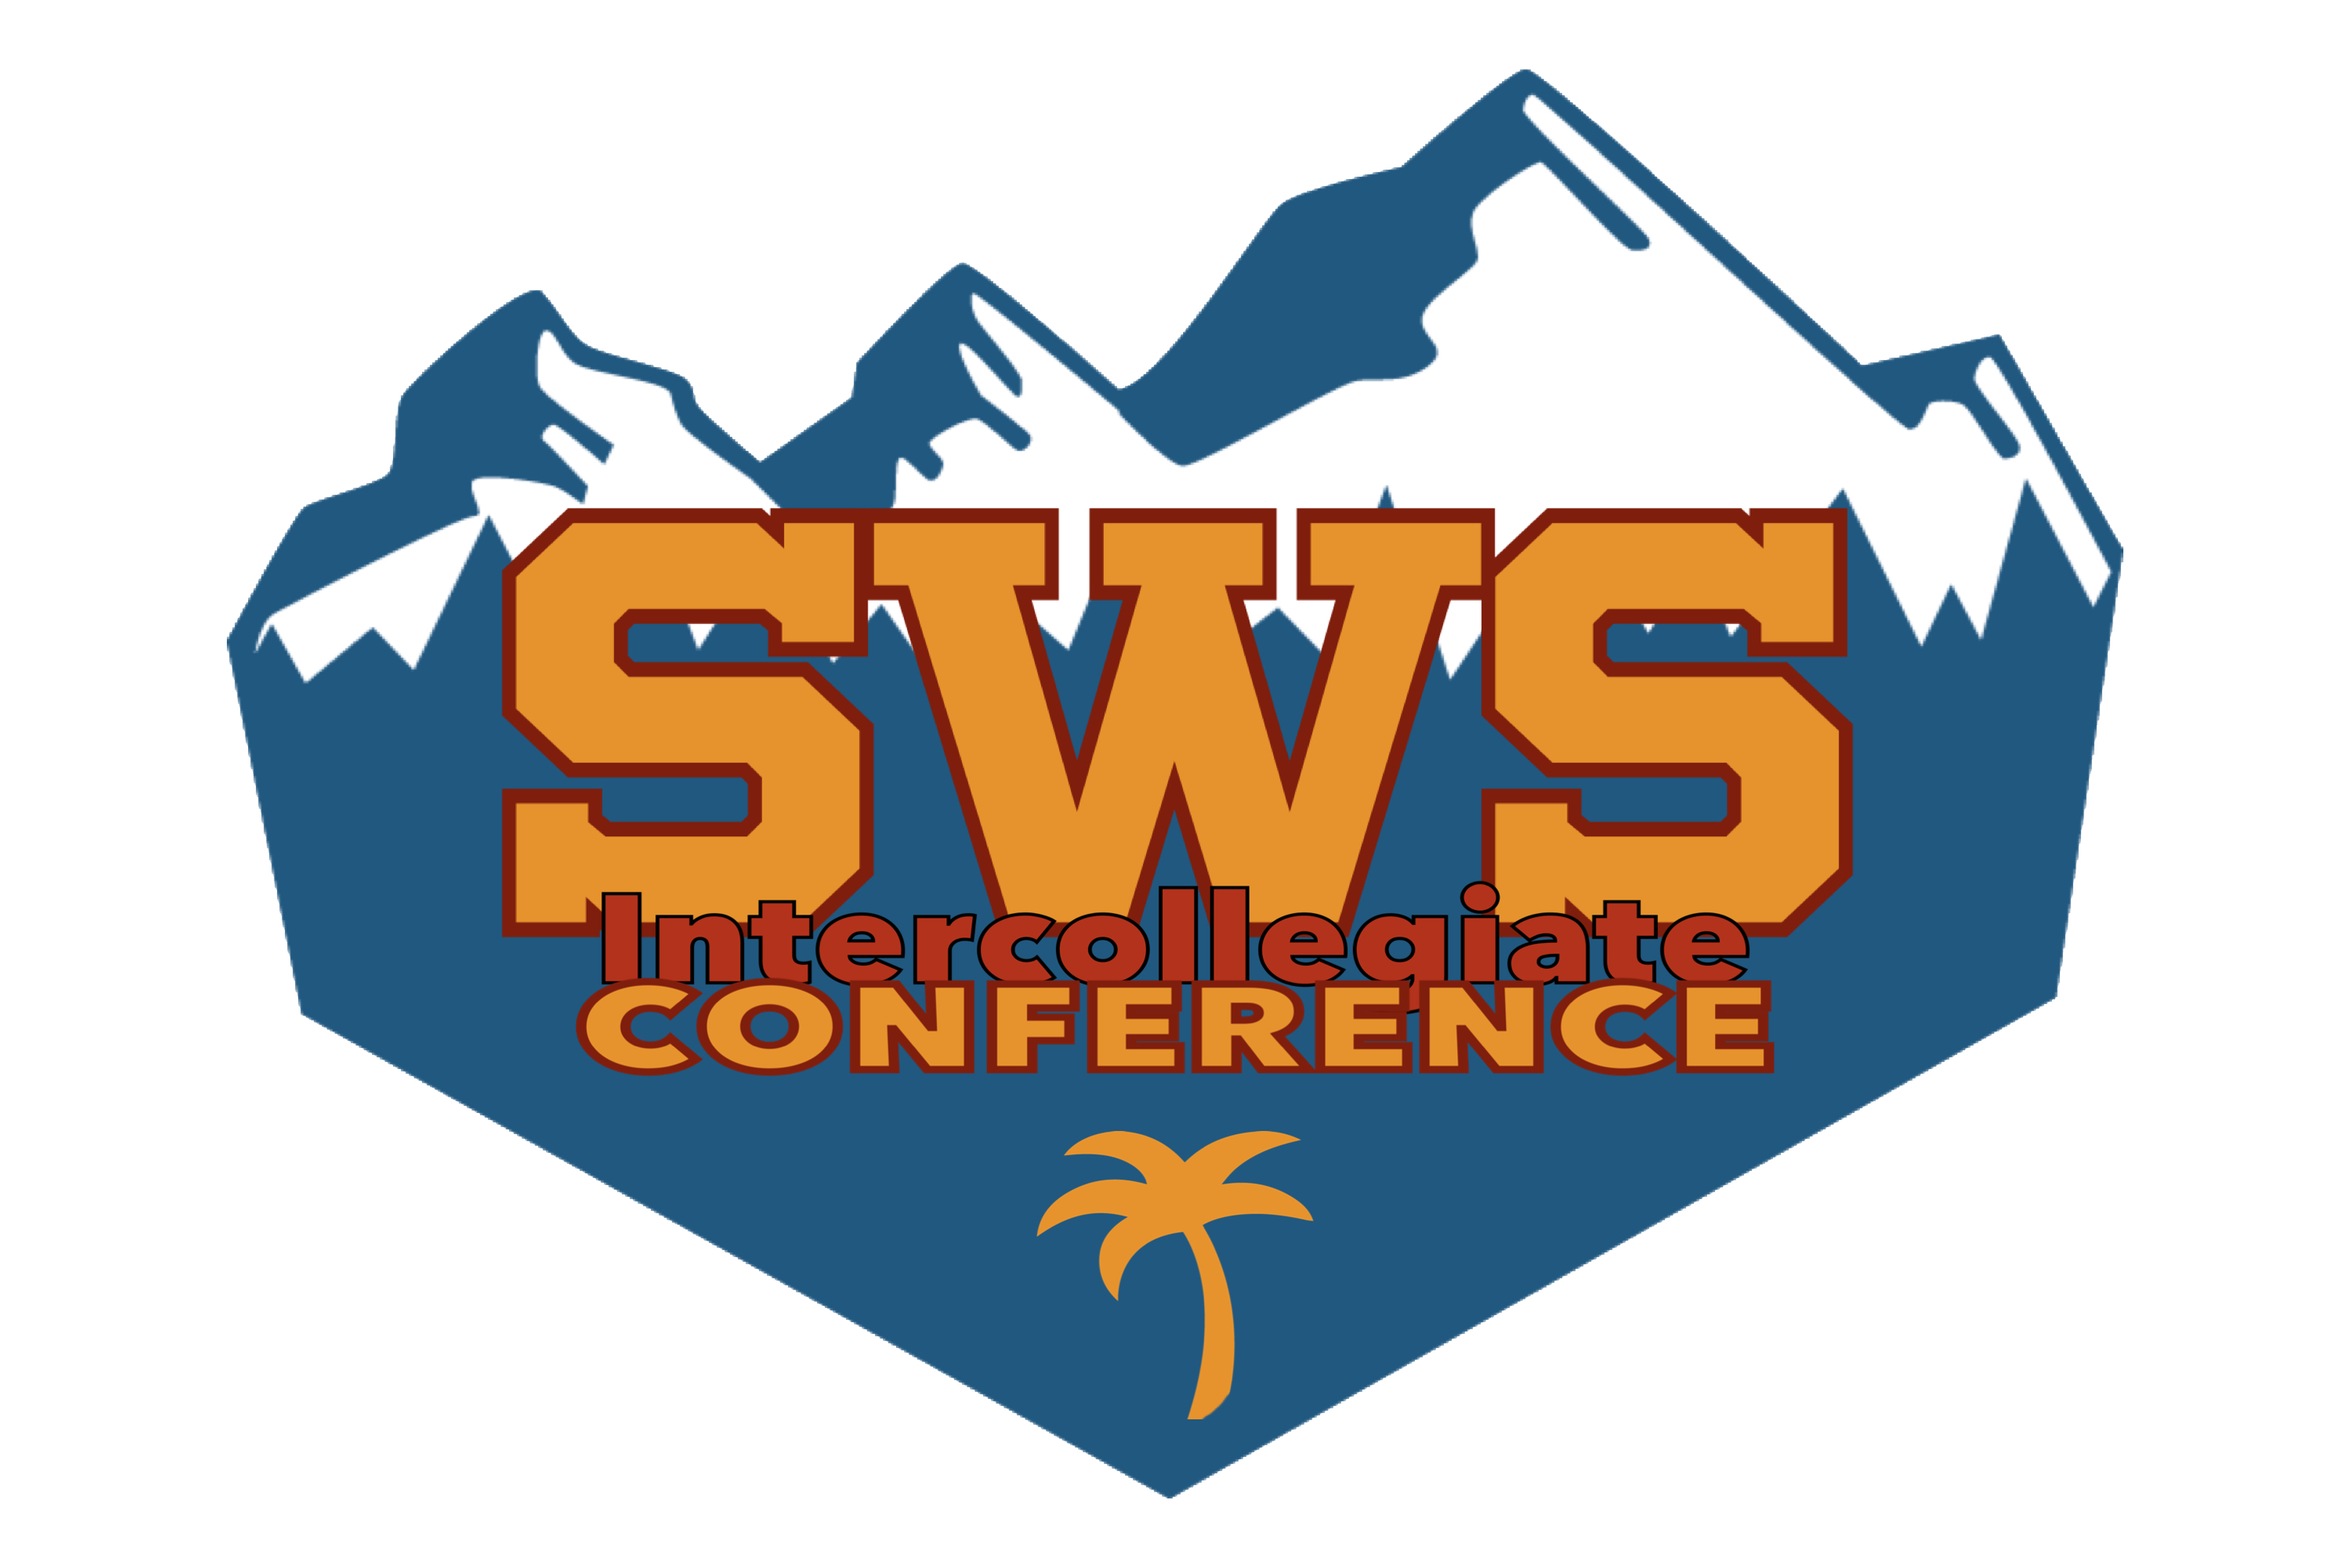 SWS Intercollegiate Conference